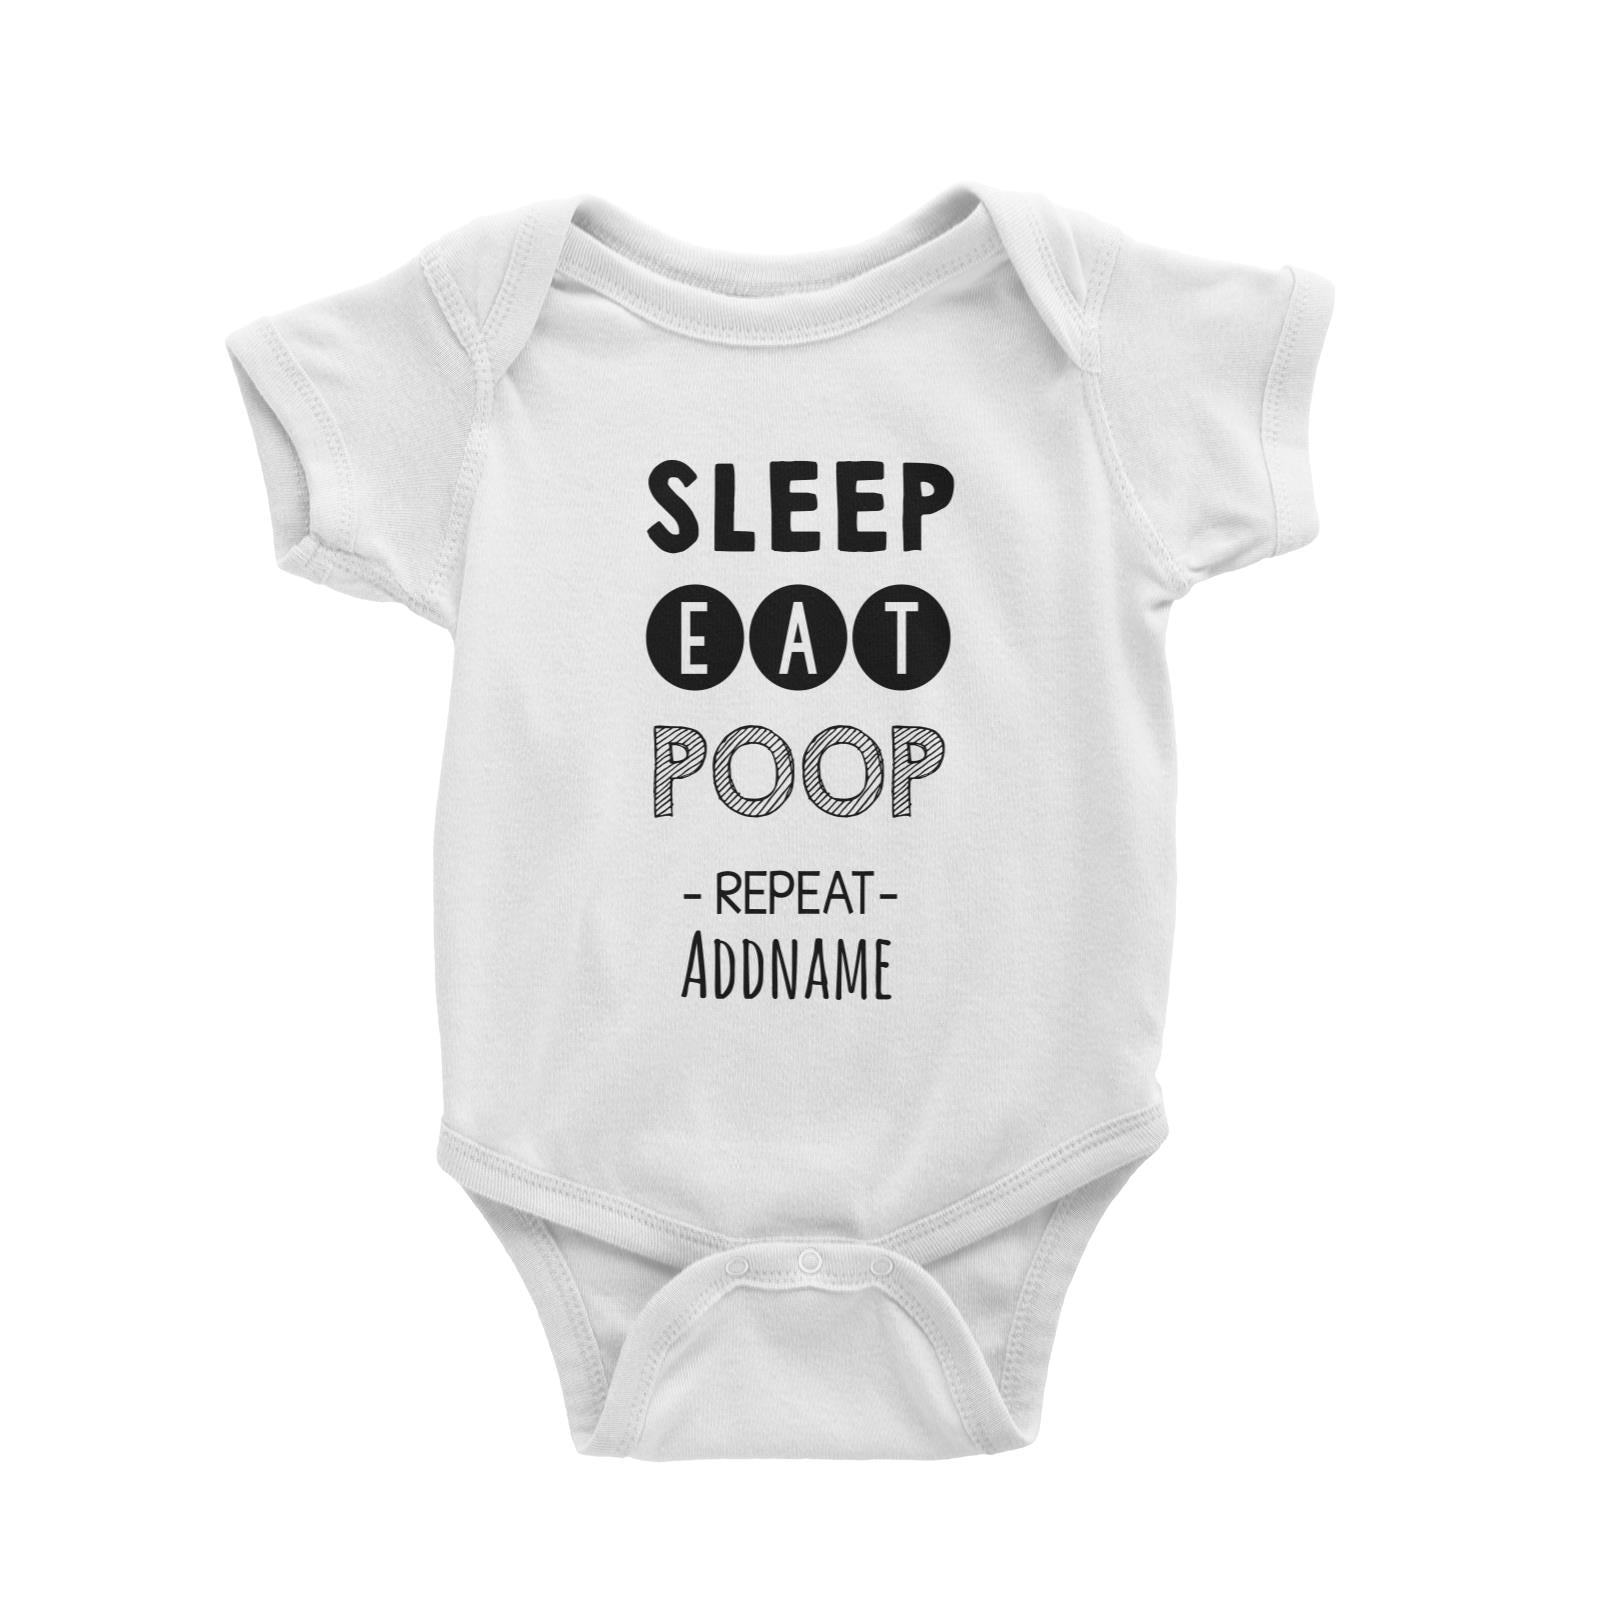 Sleep Eat Poop Repeat White Baby Romper